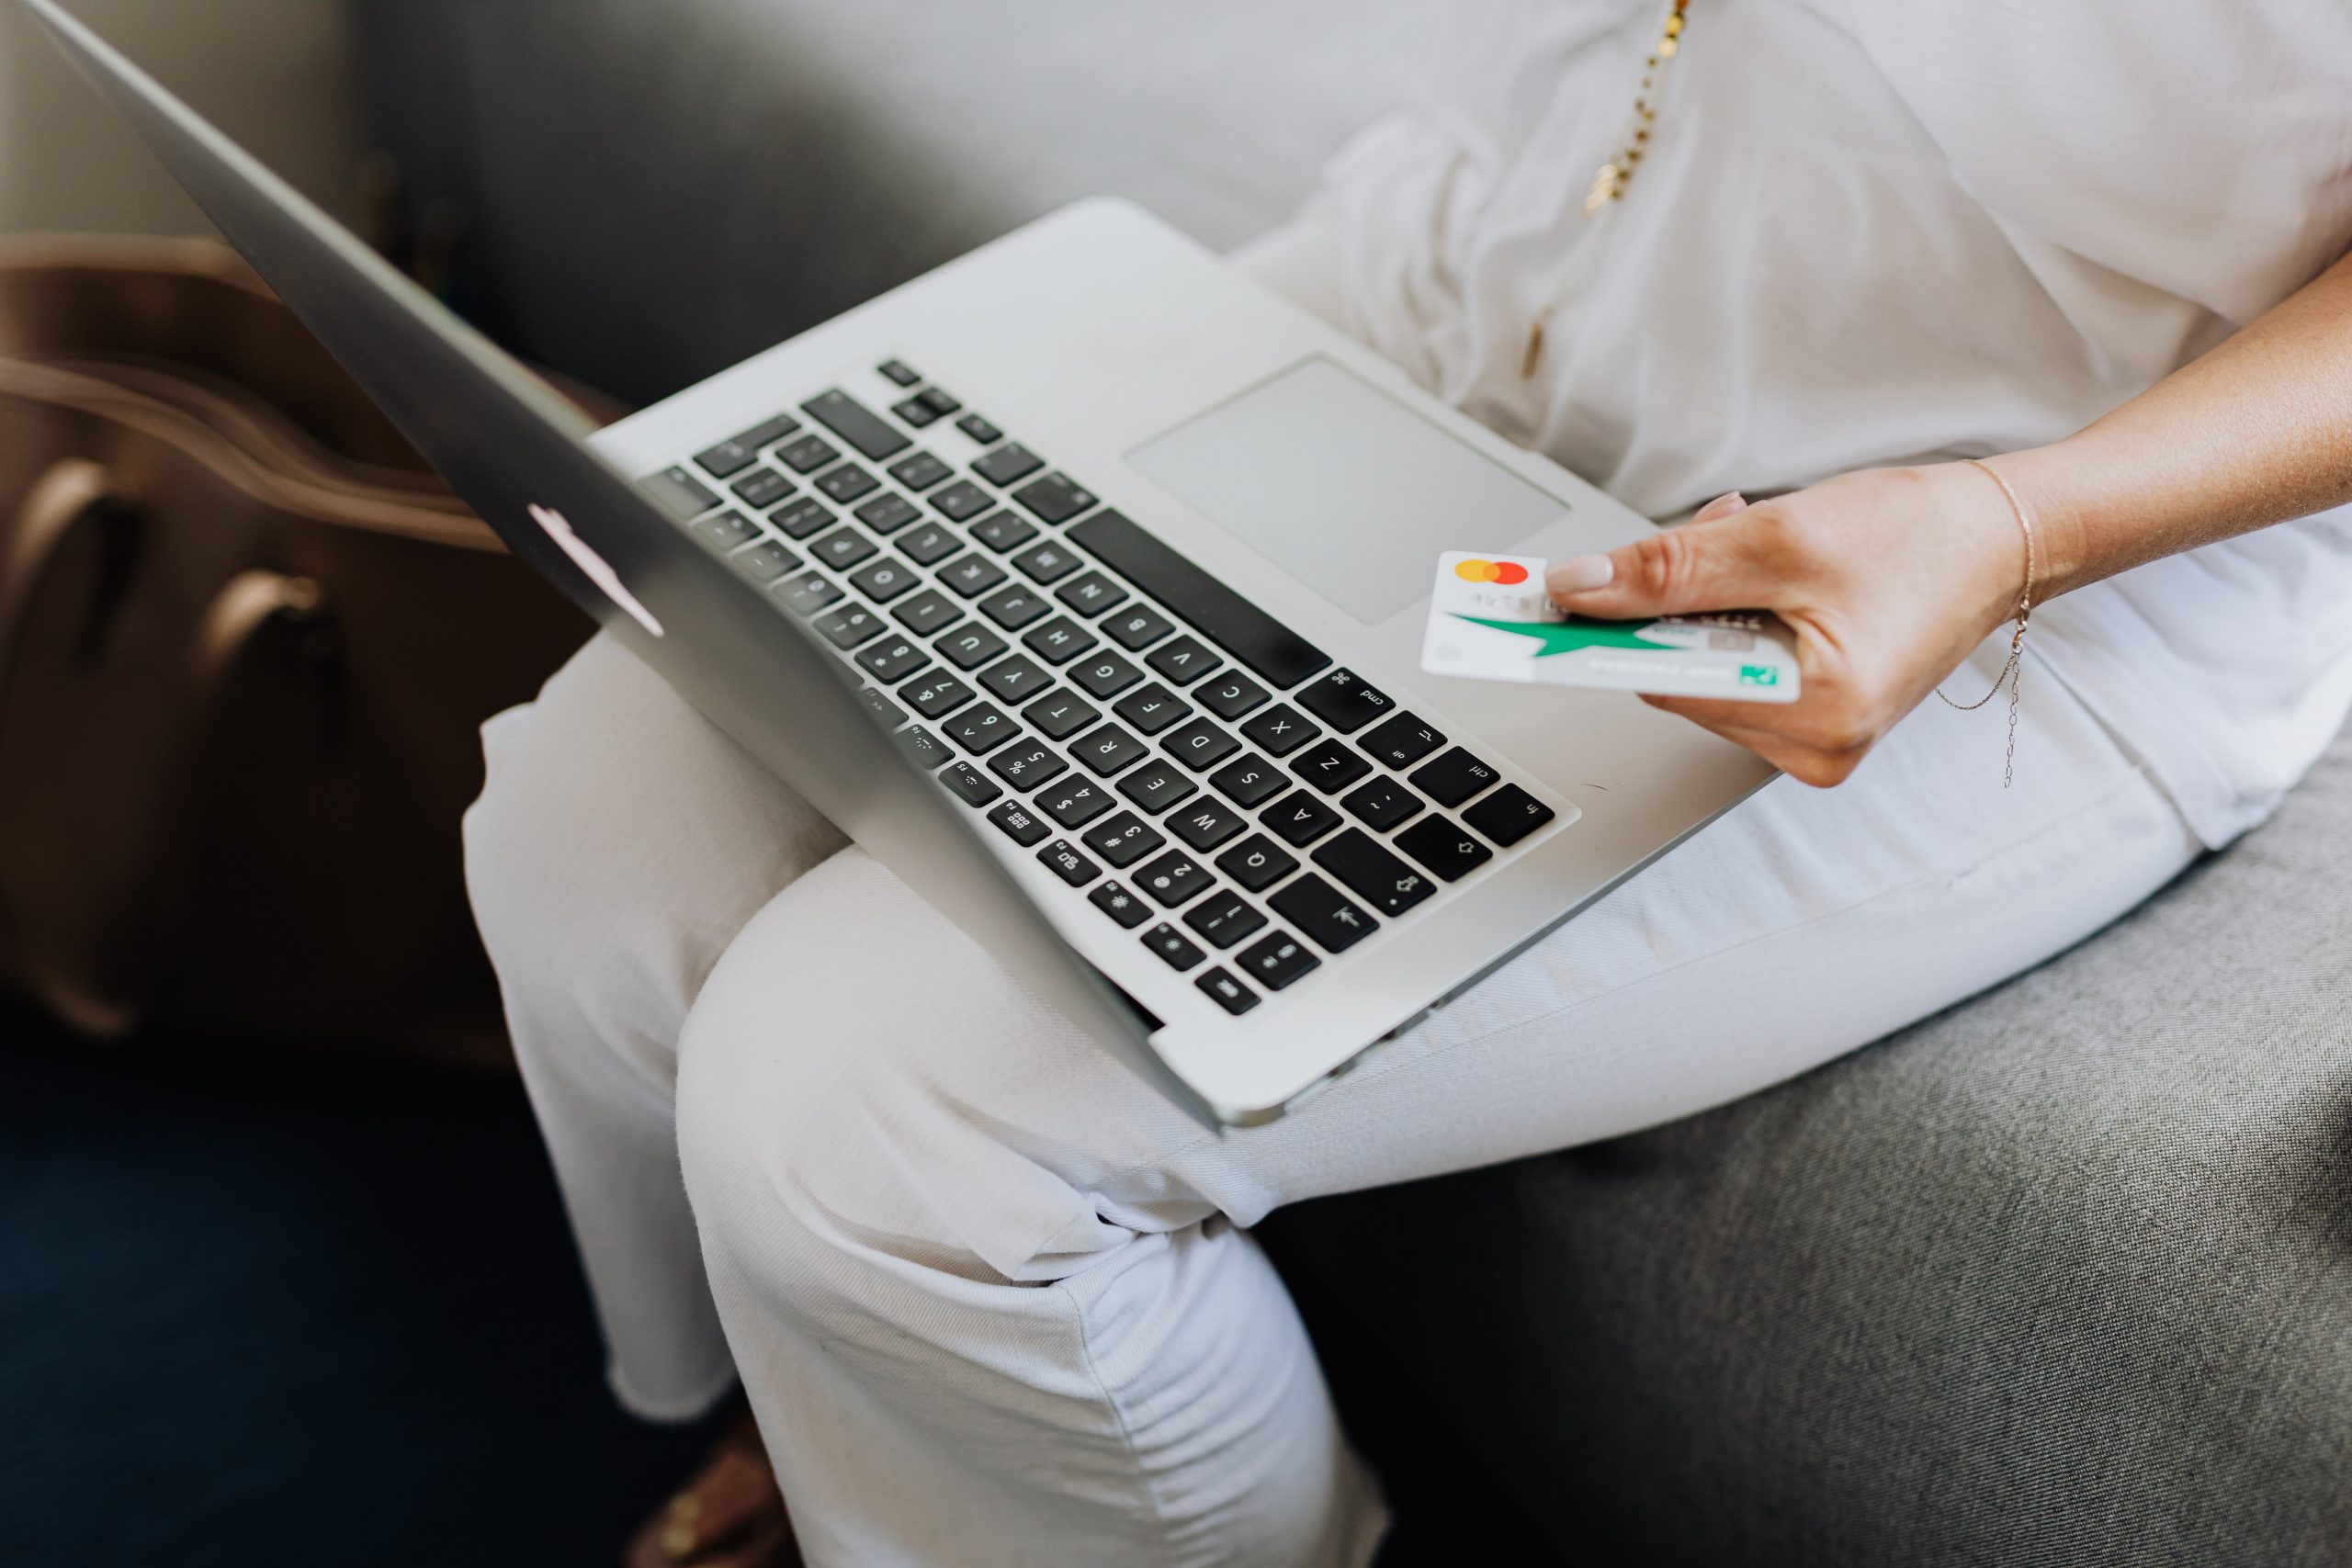 Eine Person in weißer Kleidung sitzt mit einem Laptop auf dem Schoß und hält eine Bankkarte, was die moderne, digitale Finanzberatung und das Online-Banking von zu Hause aus darstellt.